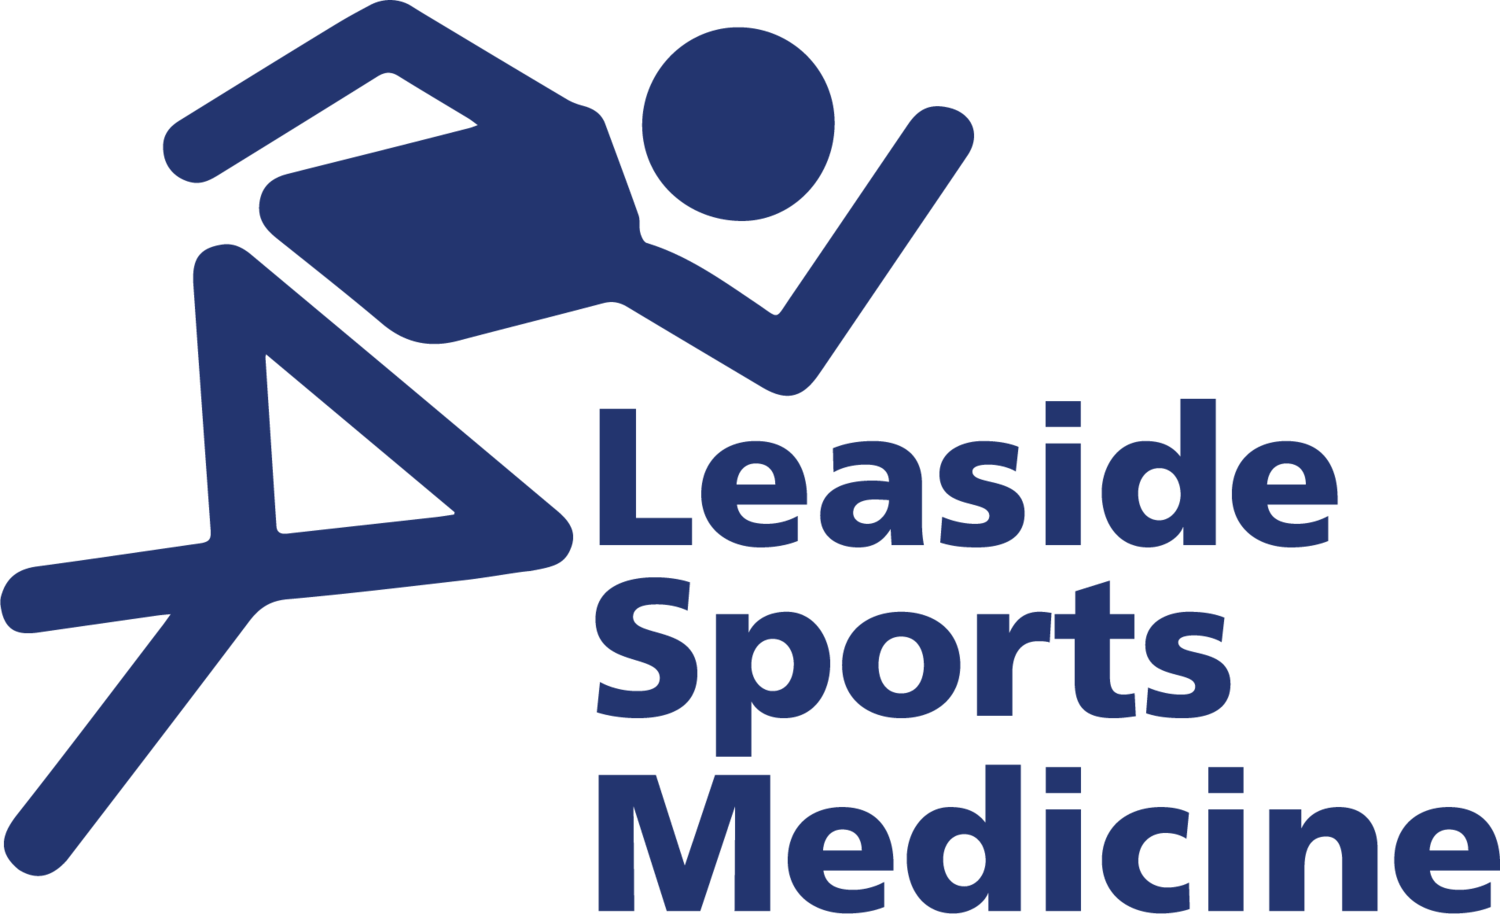 Leaside Sports Medicine